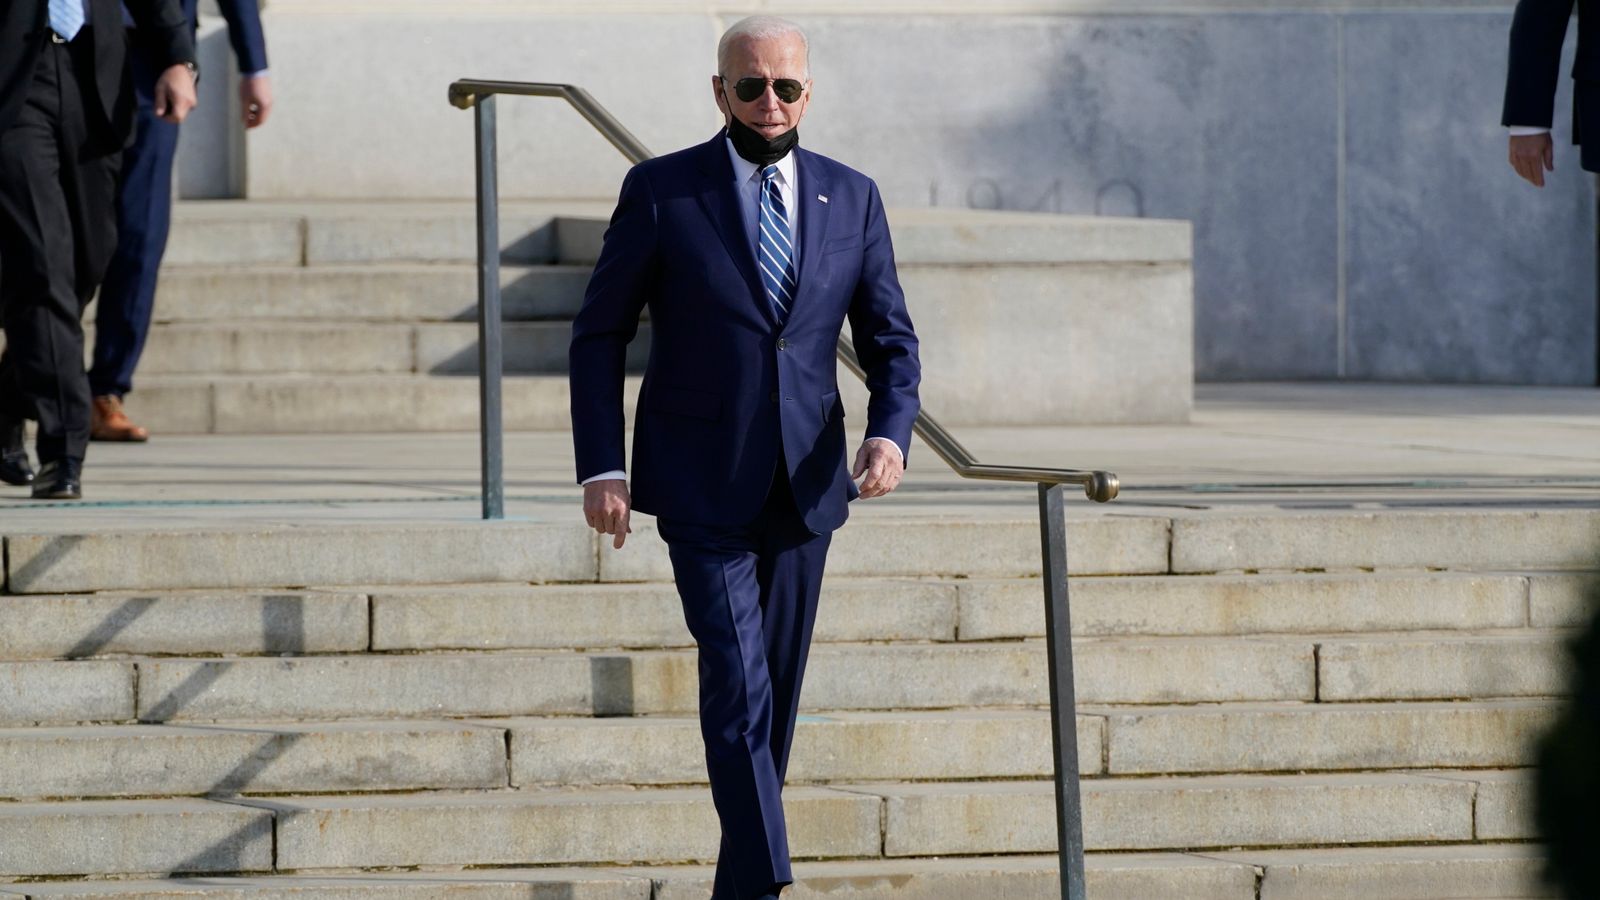 Joe Biden ‘sehat’ dan fit untuk kantor kata dokter setelah lima jam medis menjelang ulang tahun ke-79 presiden |  Berita Inggris